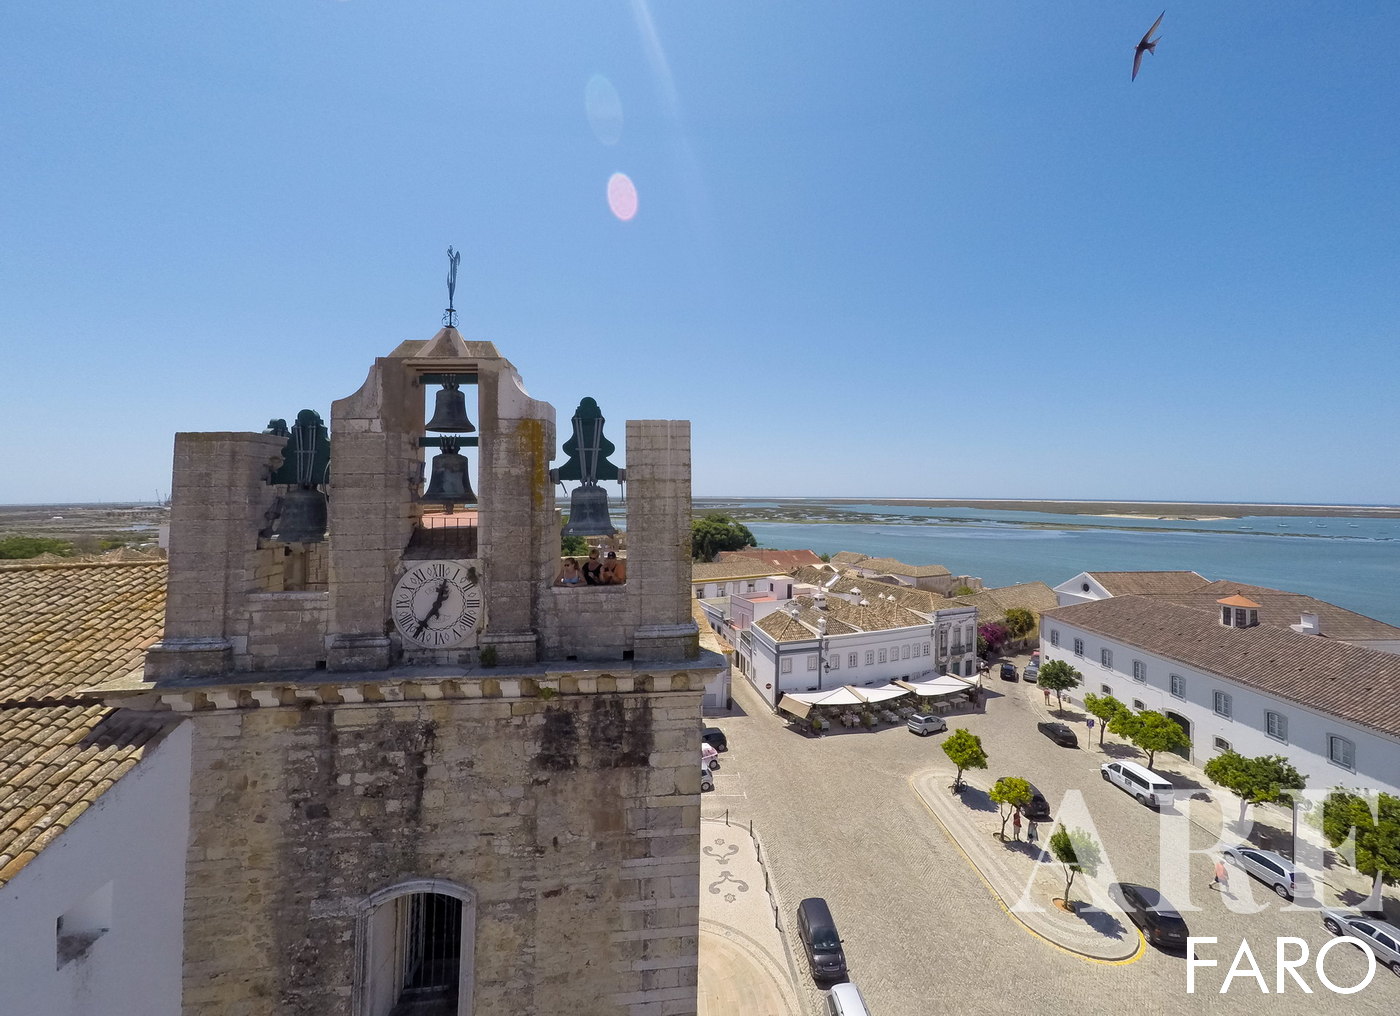 Iglesia de Santa María, Catedral de Faro, situada en el casco antiguo de Faro, uno de los puntos de visita obligada. Desde lo alto de la Catedral, podemos observar fantásticas vistas panorámicas sobre la ciudad;